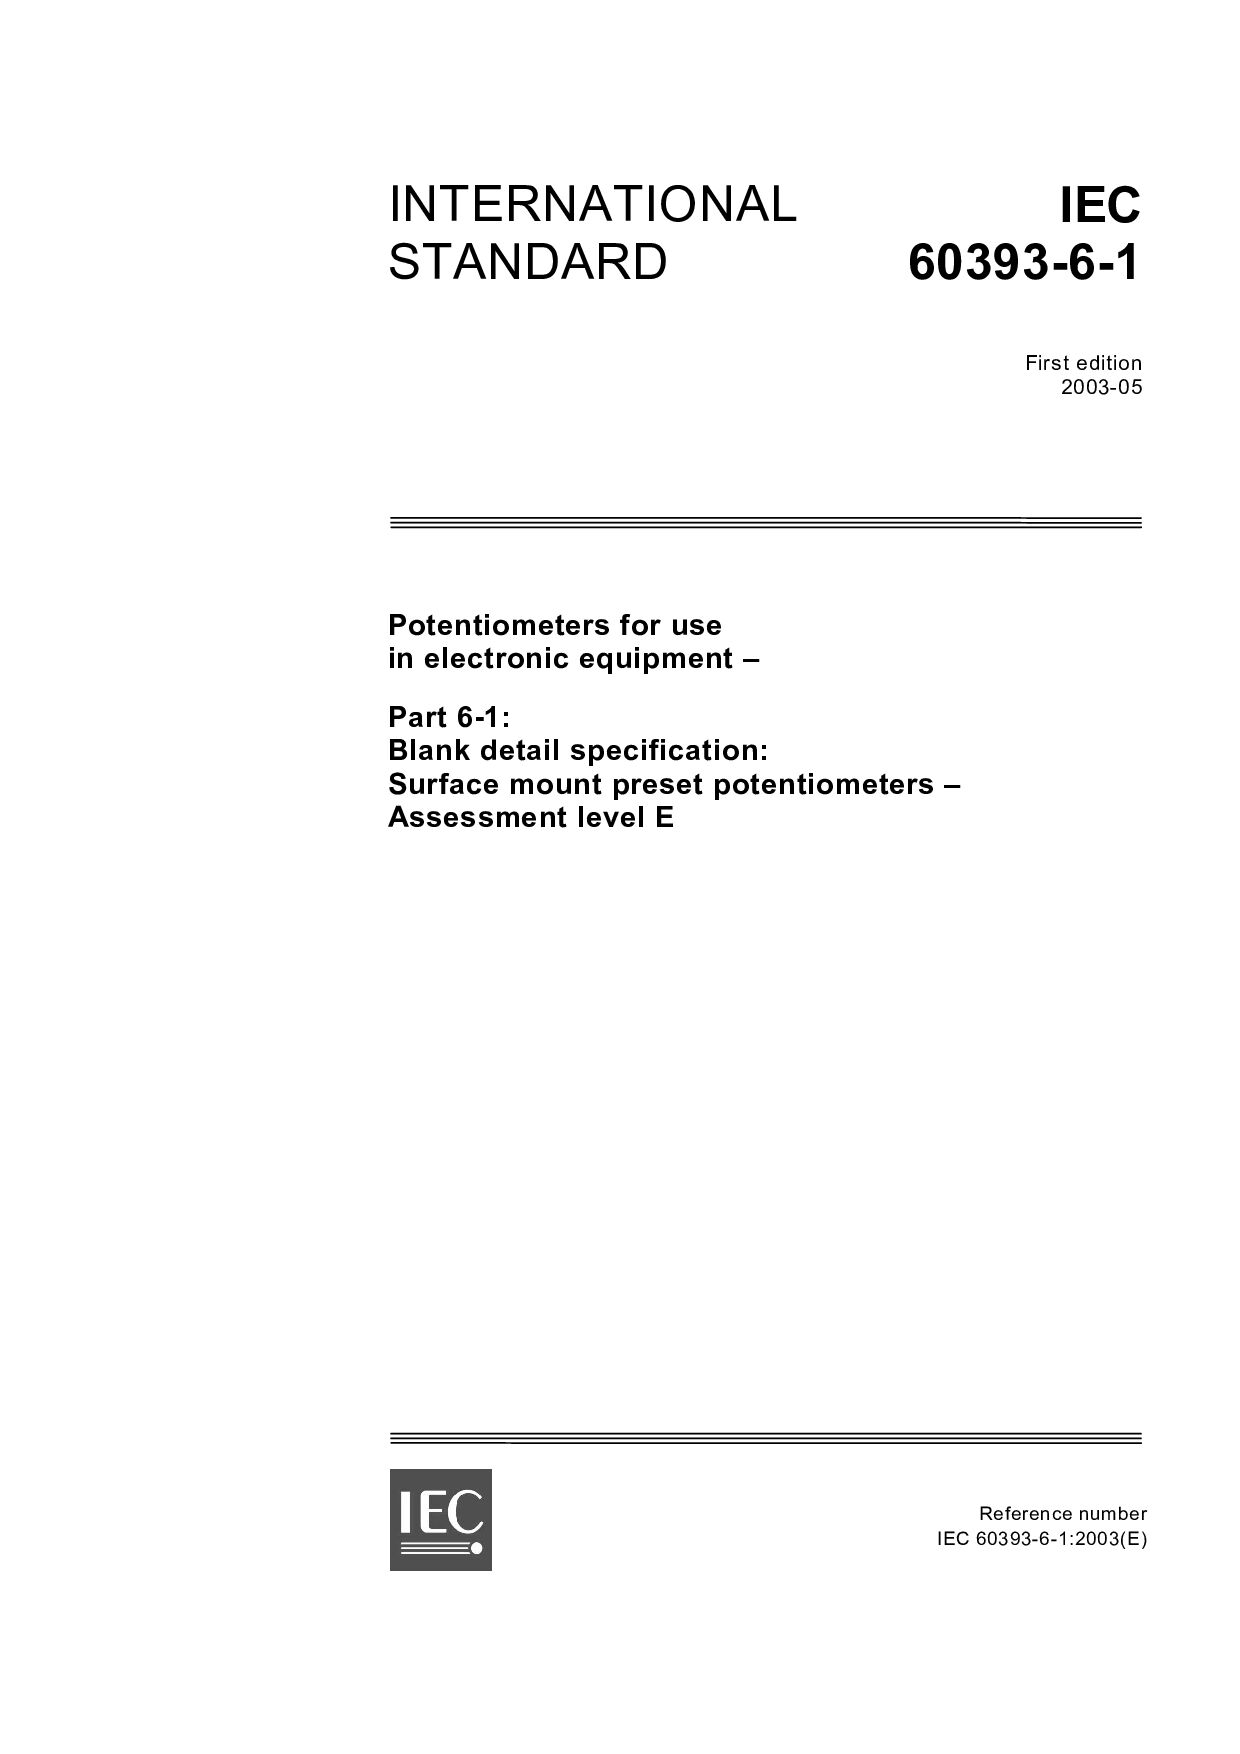 IEC 60393-6-1:2003